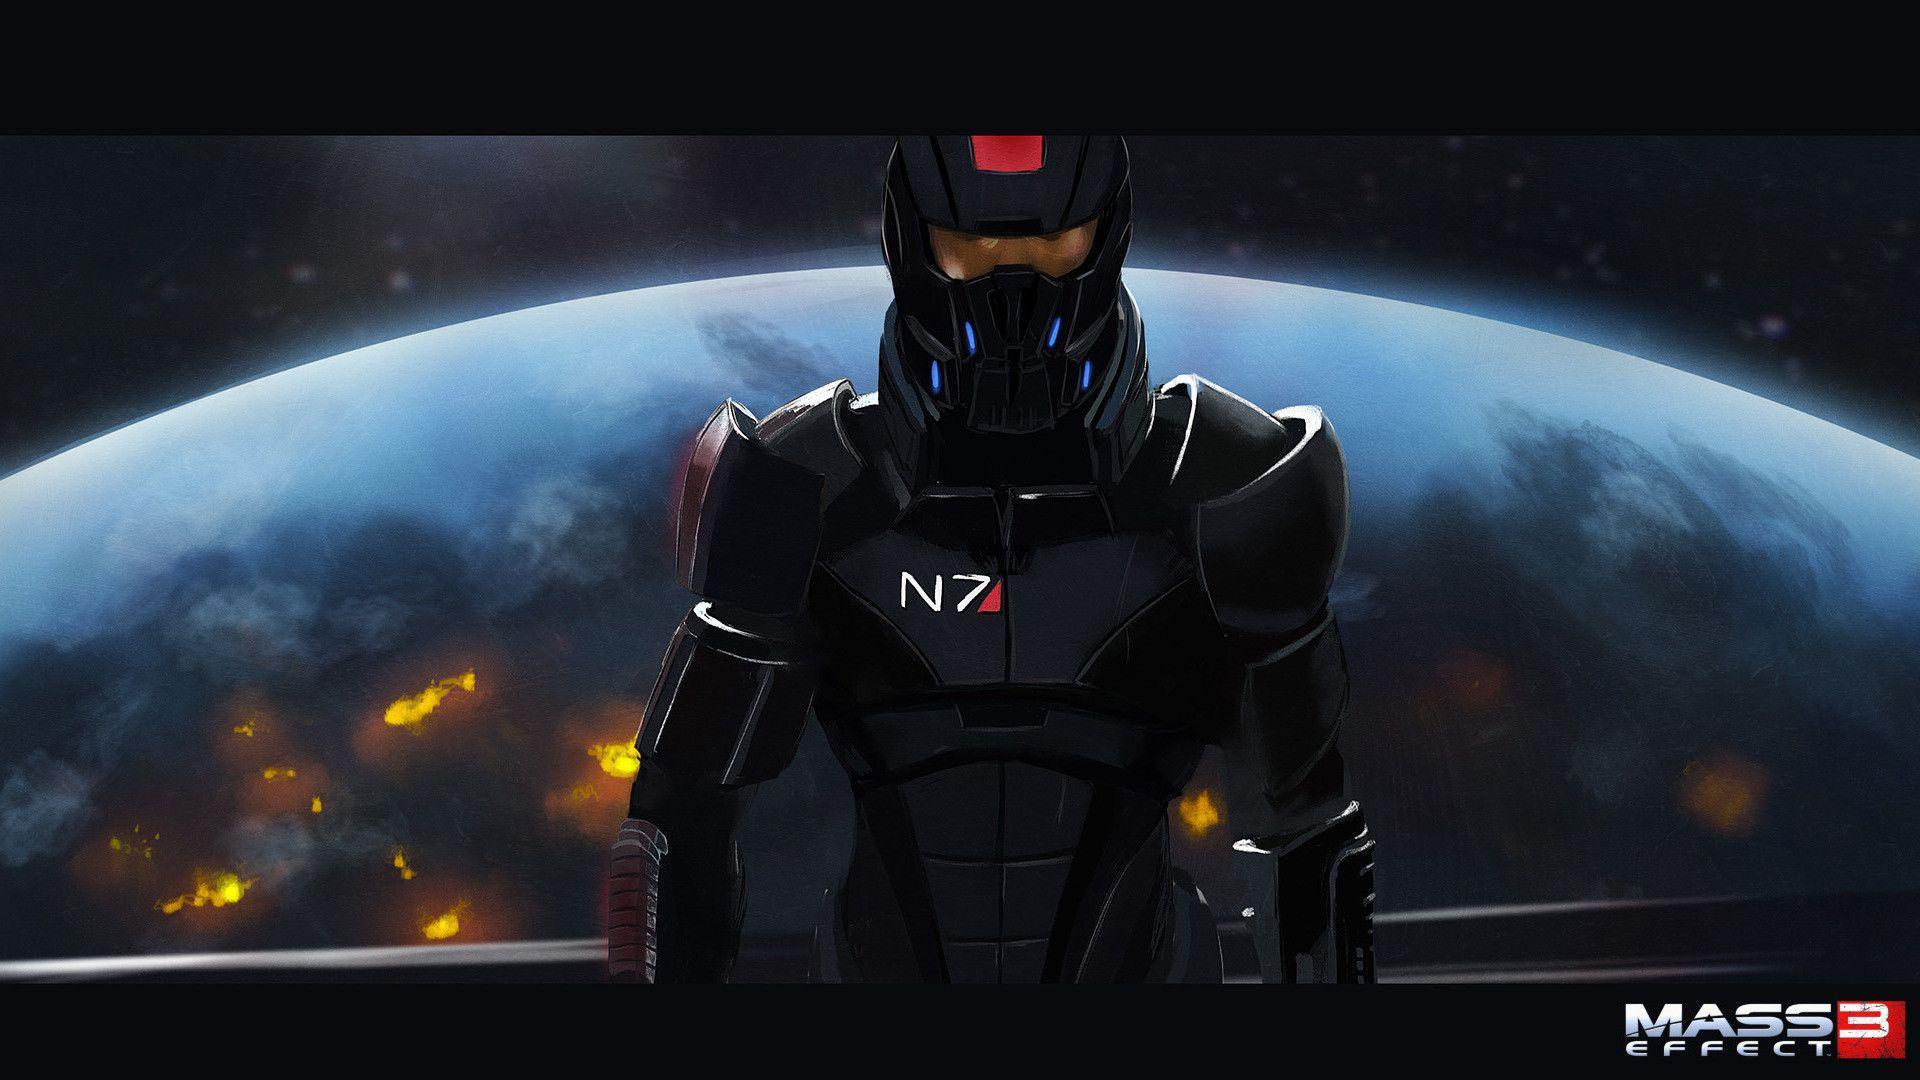 N7 Mass Effect3 Wallpapers